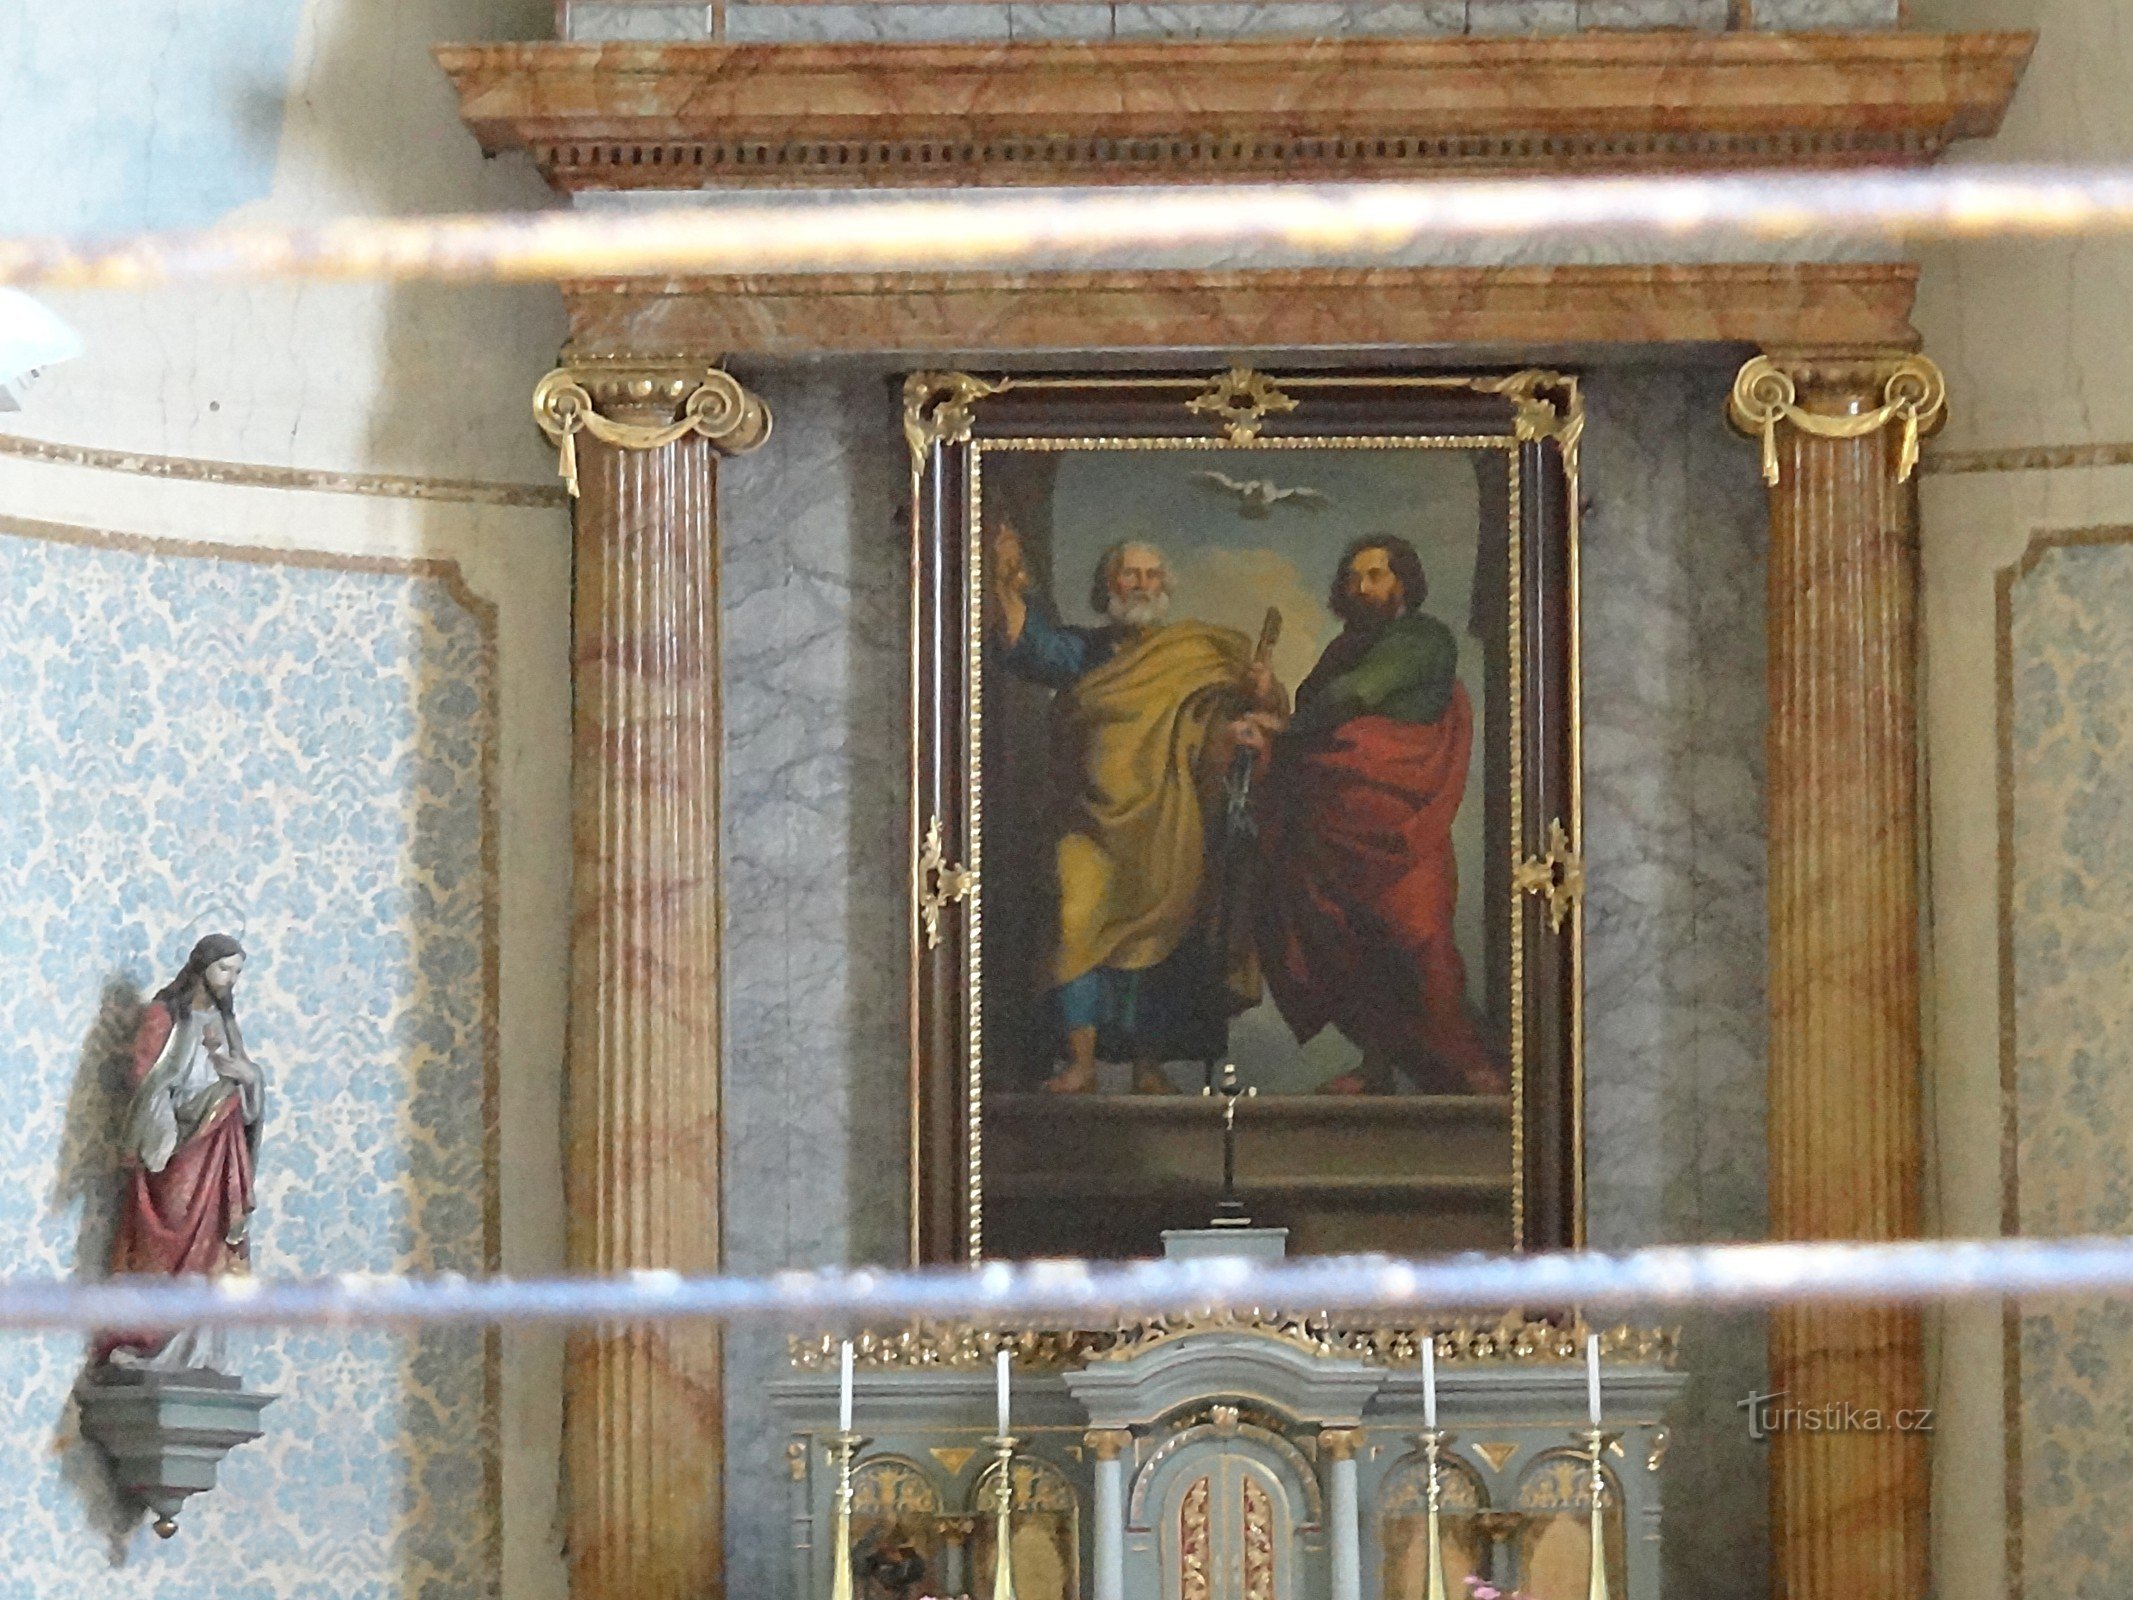 Istebník altar of St. Peter and Paul